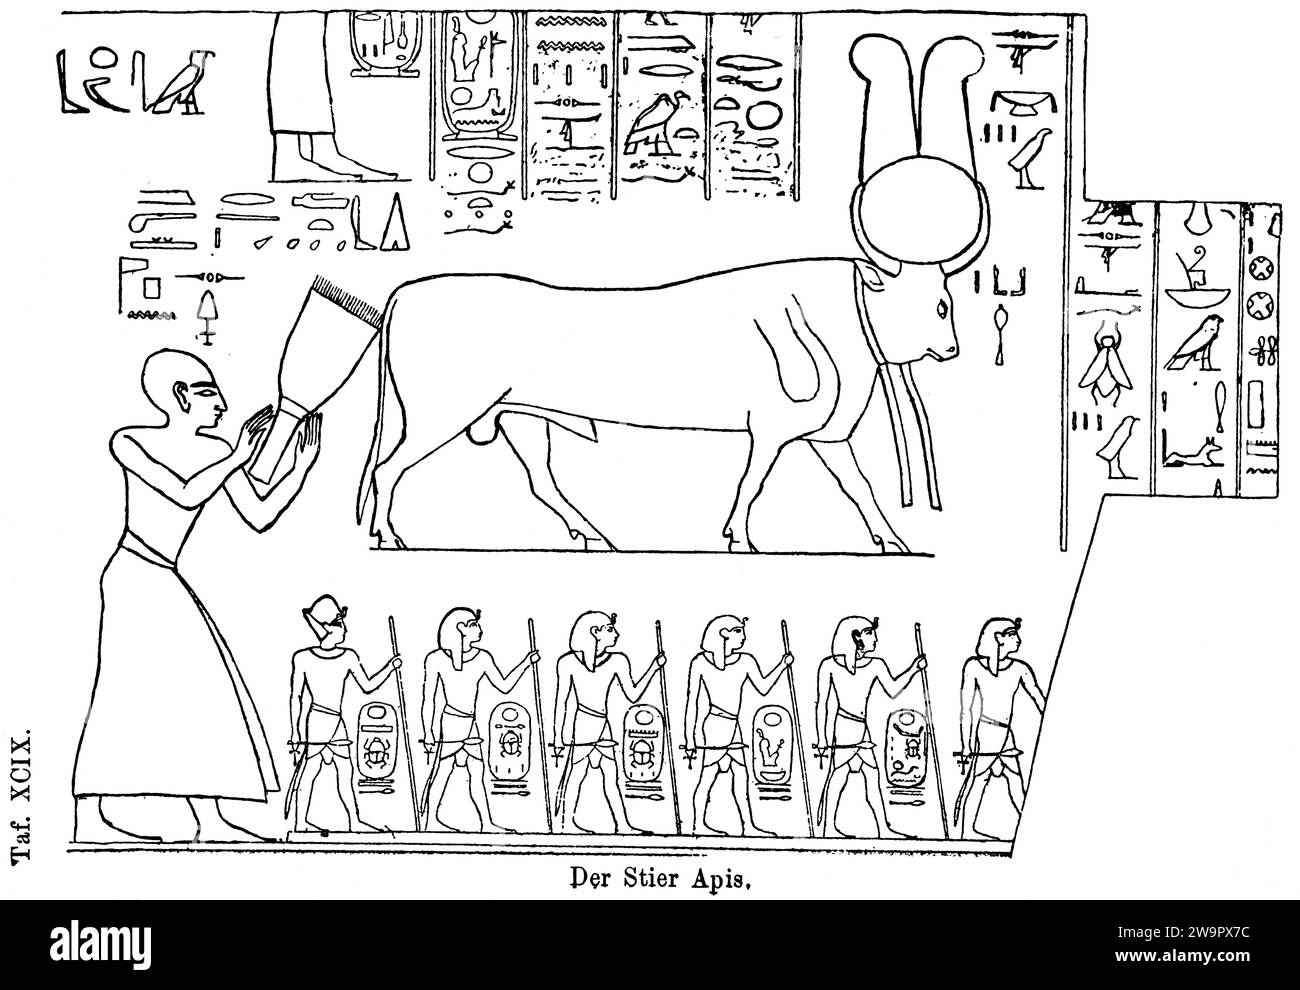 Le taureau sacré (Apis) de Memphis, Nil, Basse Égypte, dieu égyptien de la fertilité, disque solaire, connexion au dieu solaire Re, hiéroglyphes, antiquité Banque D'Images